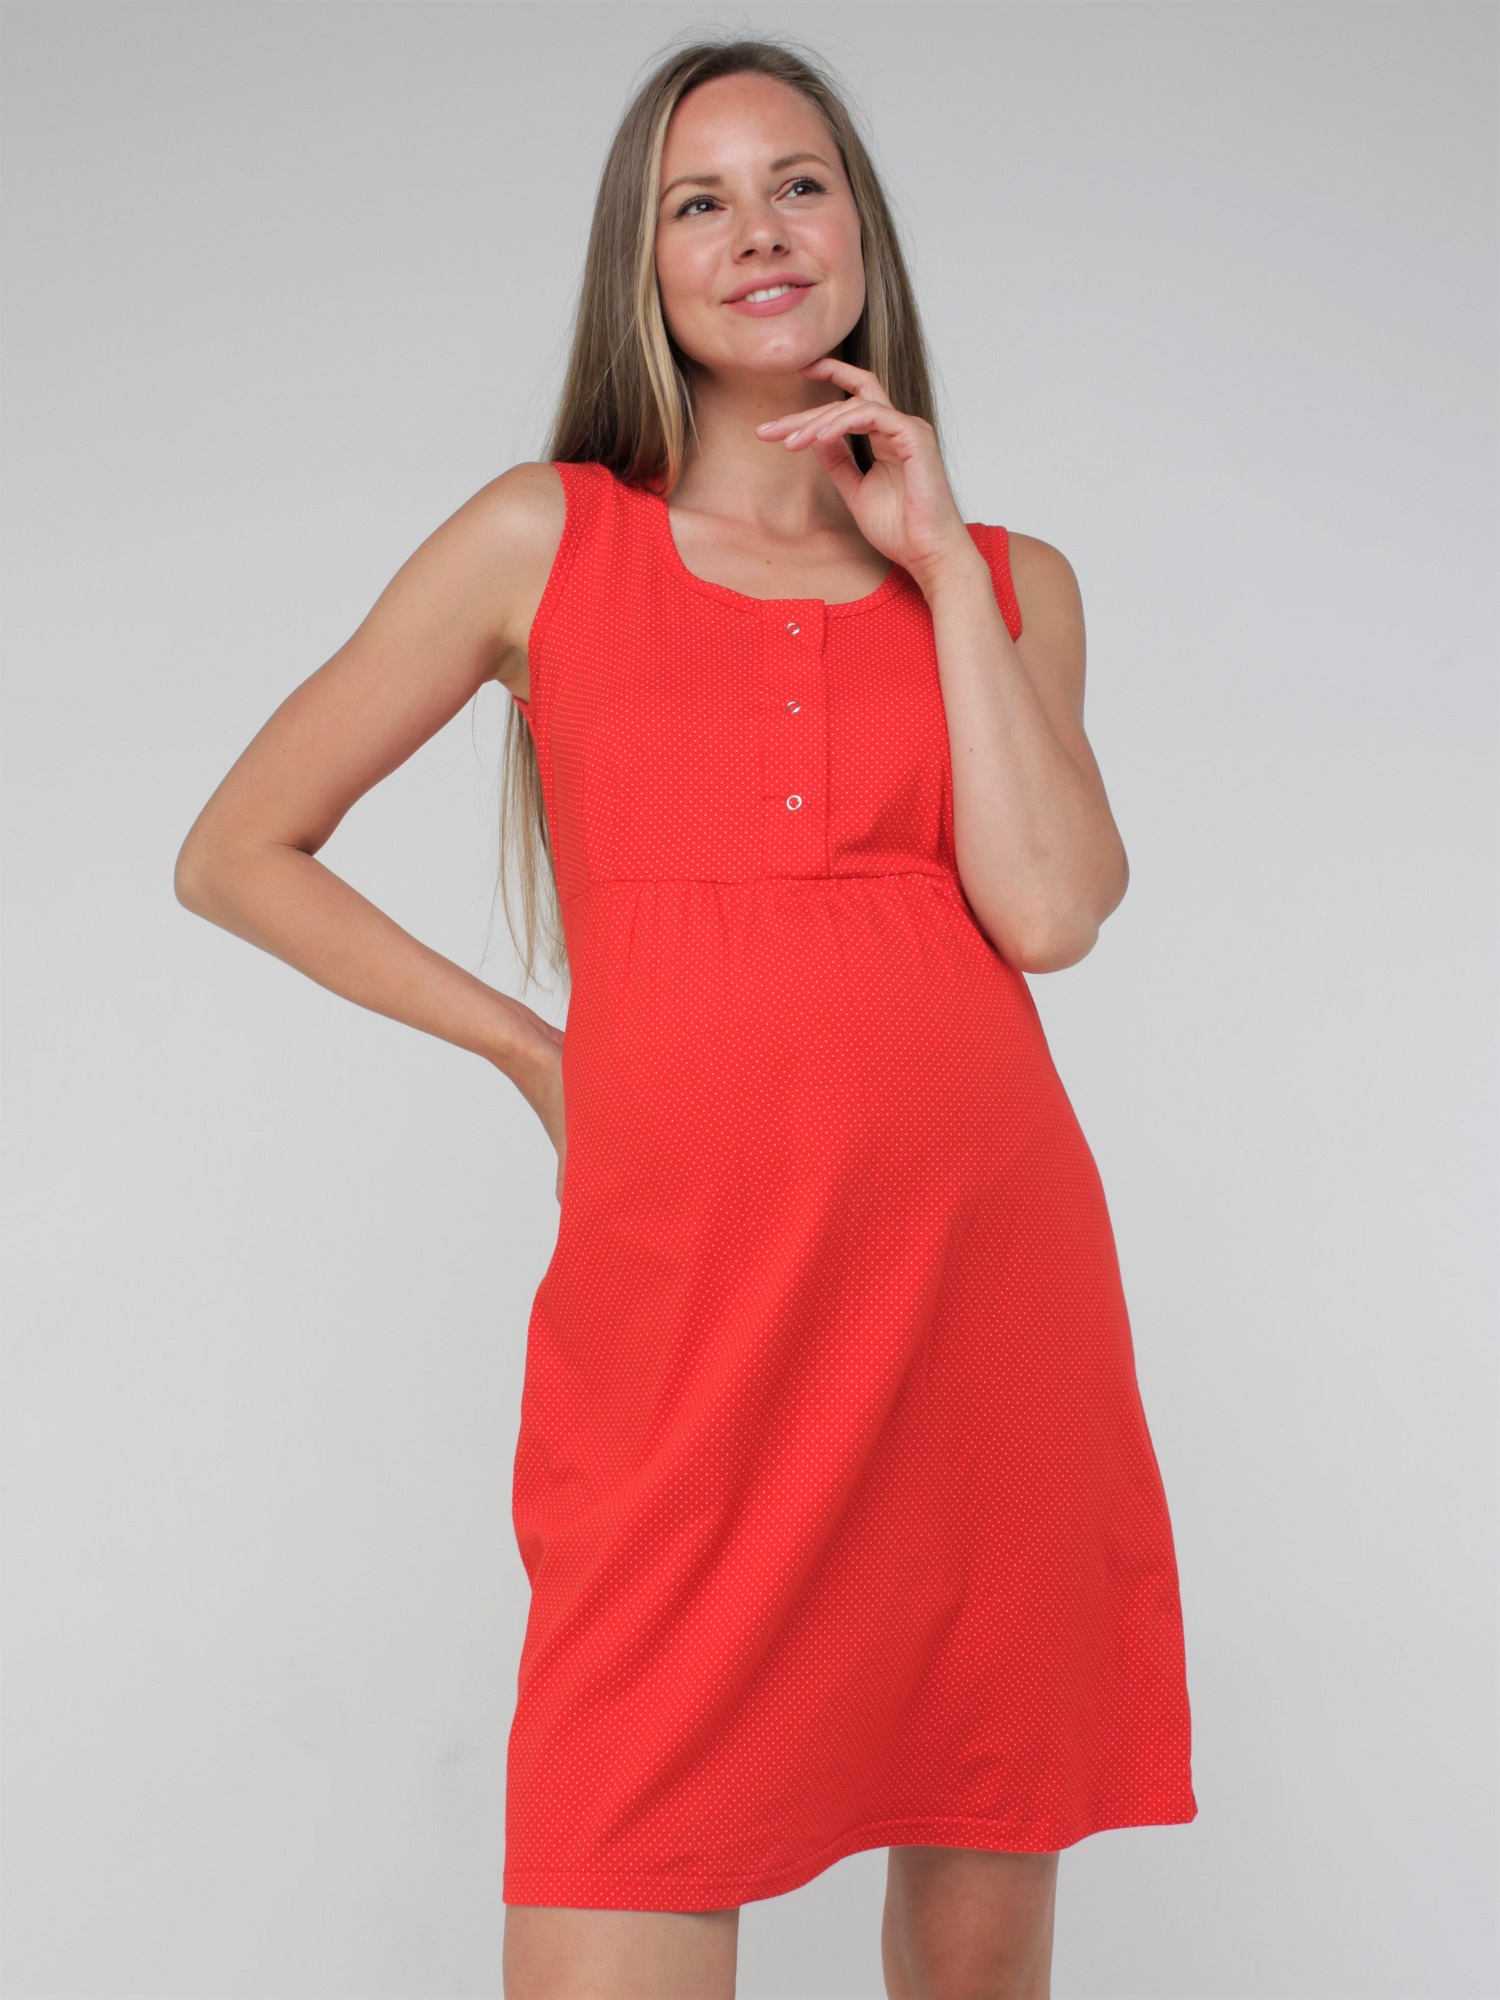 Сорочка для беременных и кормящих арт.270700 красная